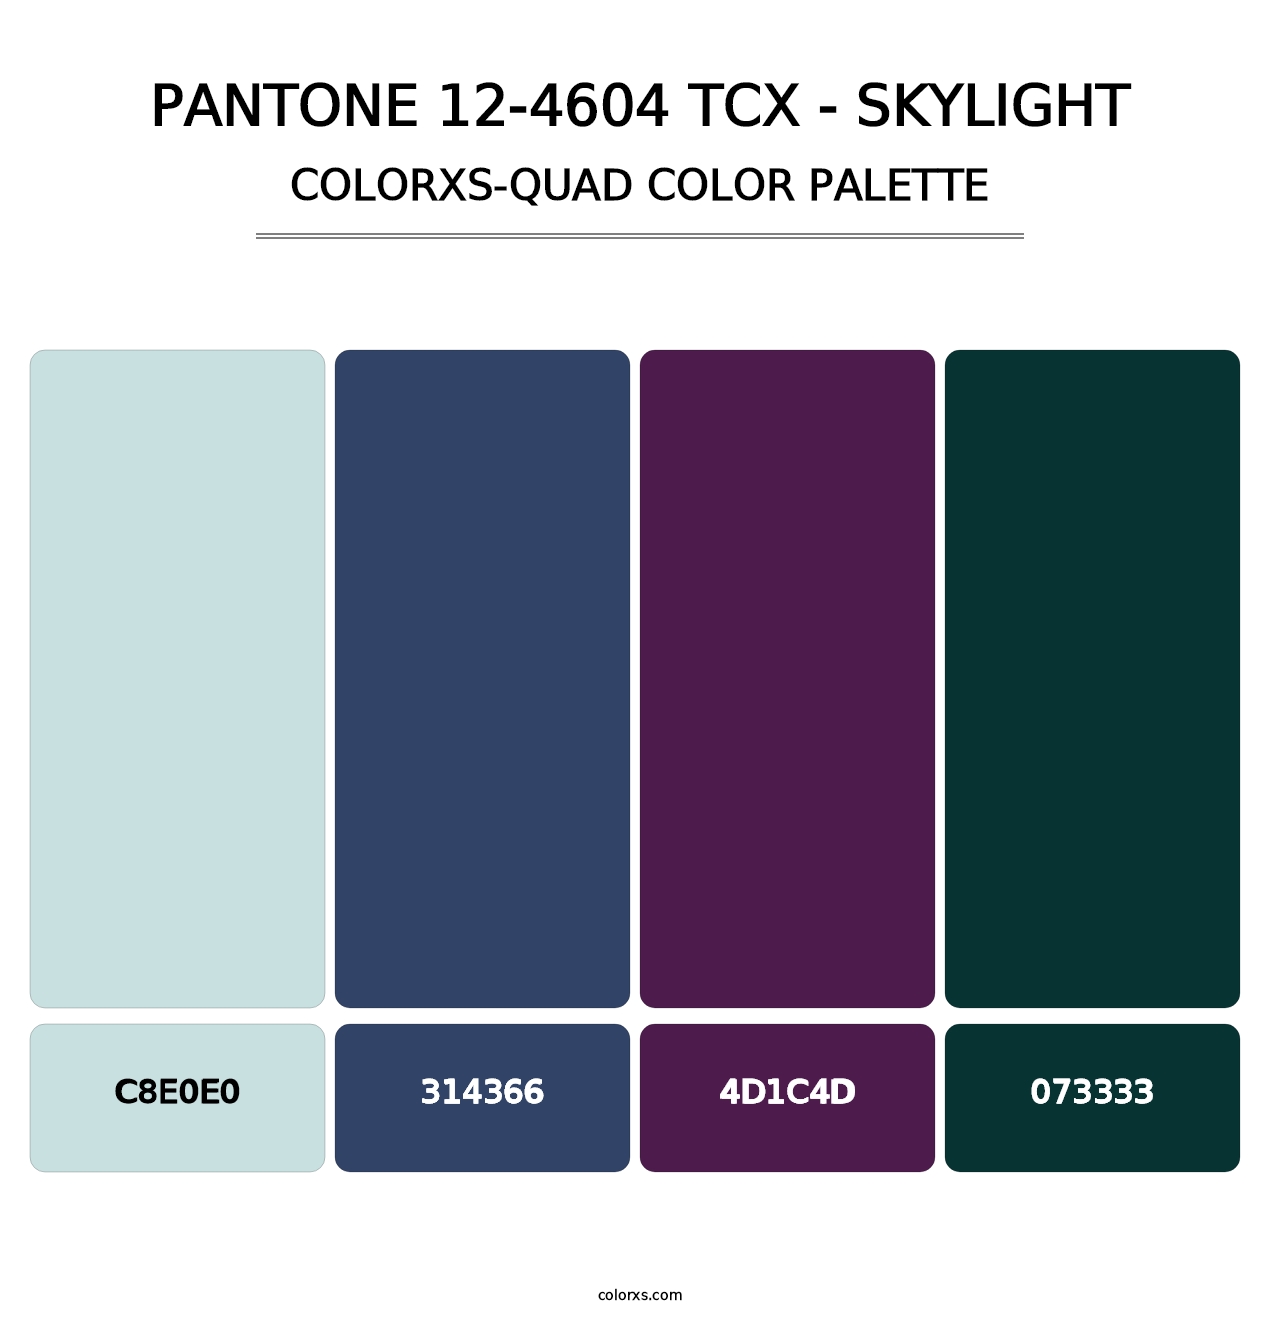 PANTONE 12-4604 TCX - Skylight - Colorxs Quad Palette